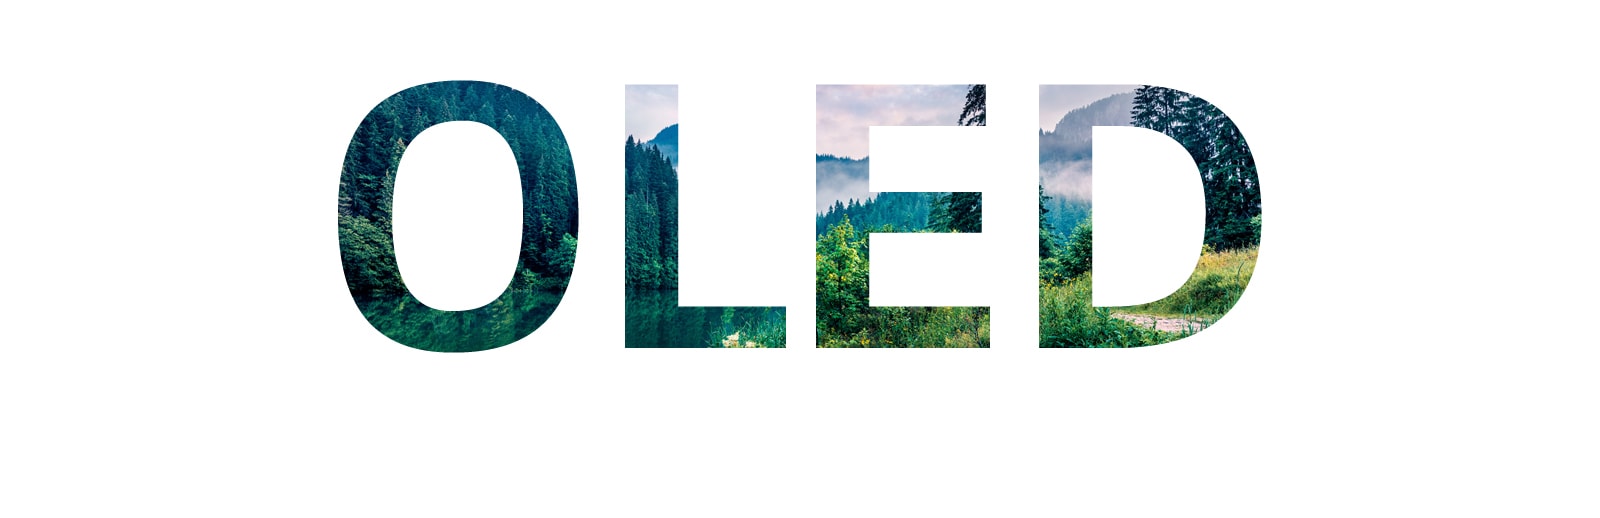 Η λέξη "OLED" όπου μέσα στα γράμματα φαίνεται ένα τοπίο της φύσης που κινείται από δεξιά (αναπαραγωγή βίντεο)